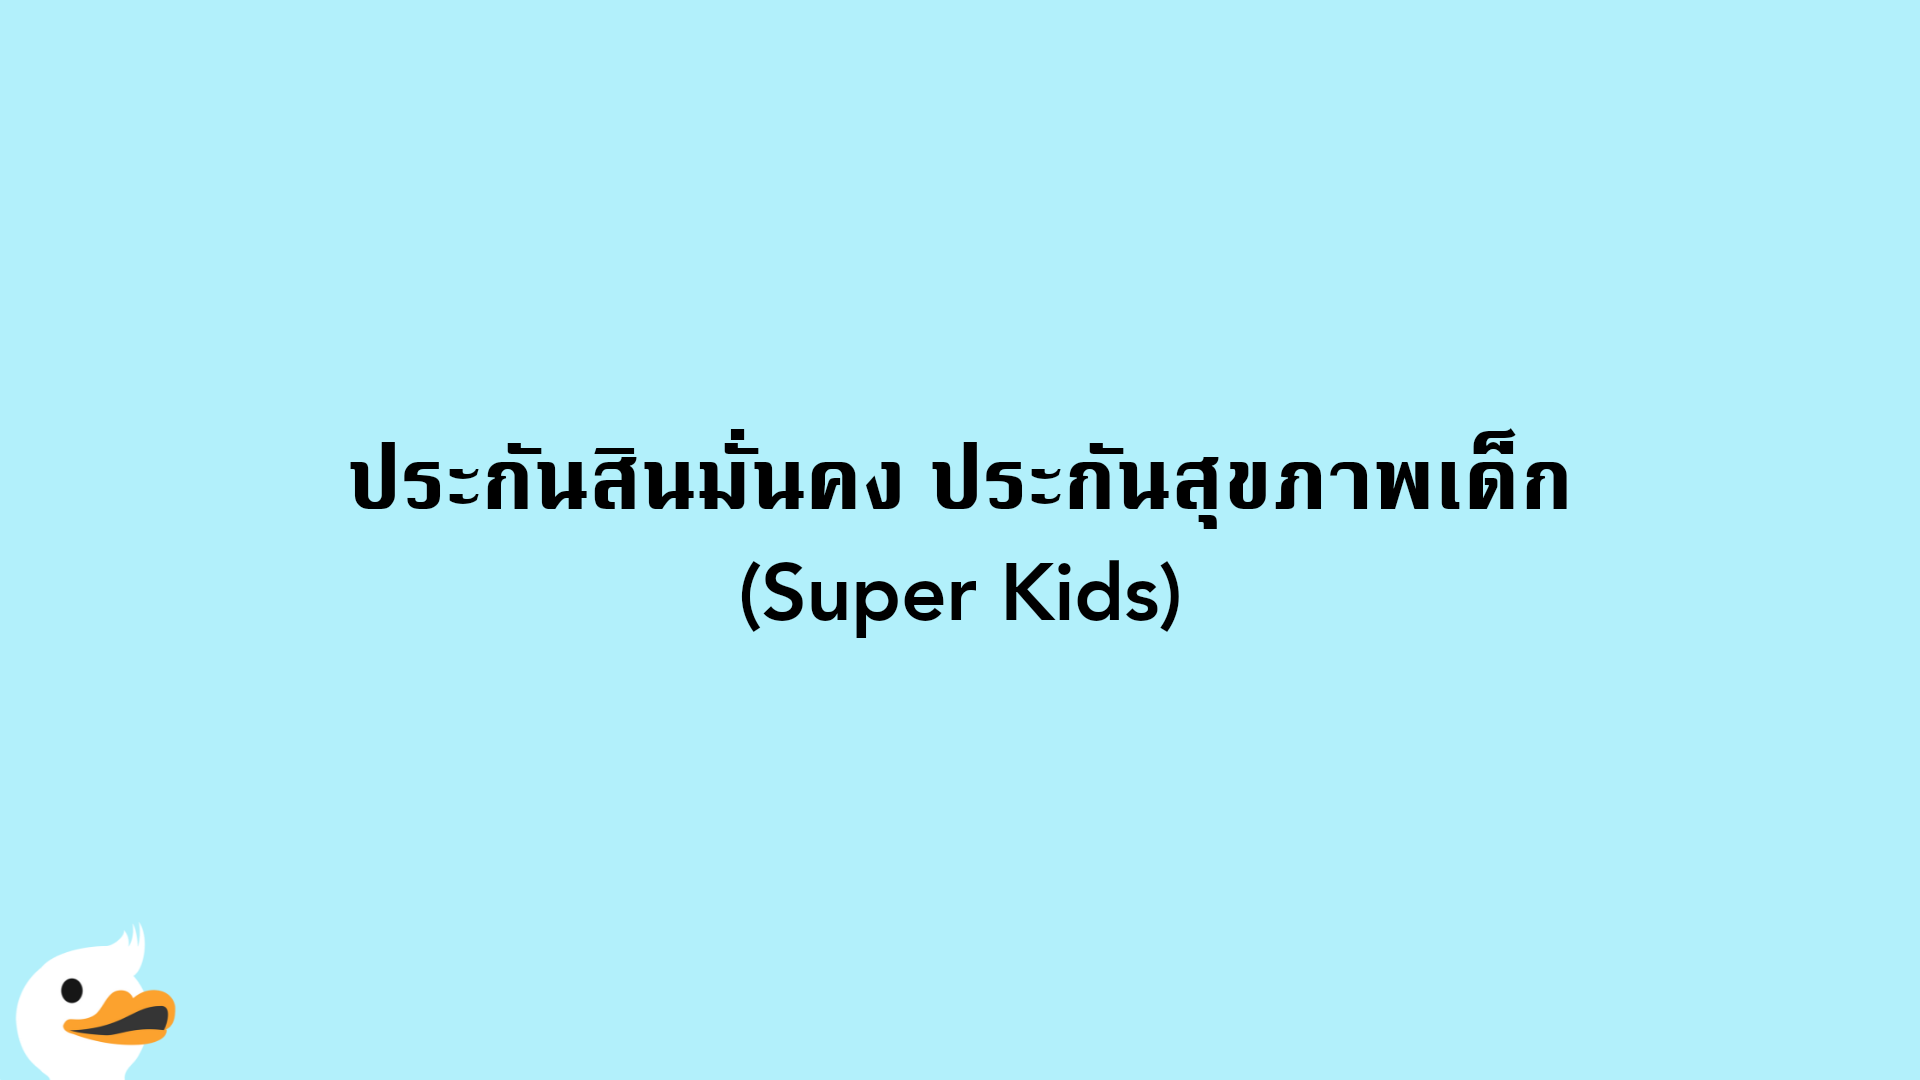 ประกันสินมั่นคง ประกันสุขภาพเด็ก (Super Kids)